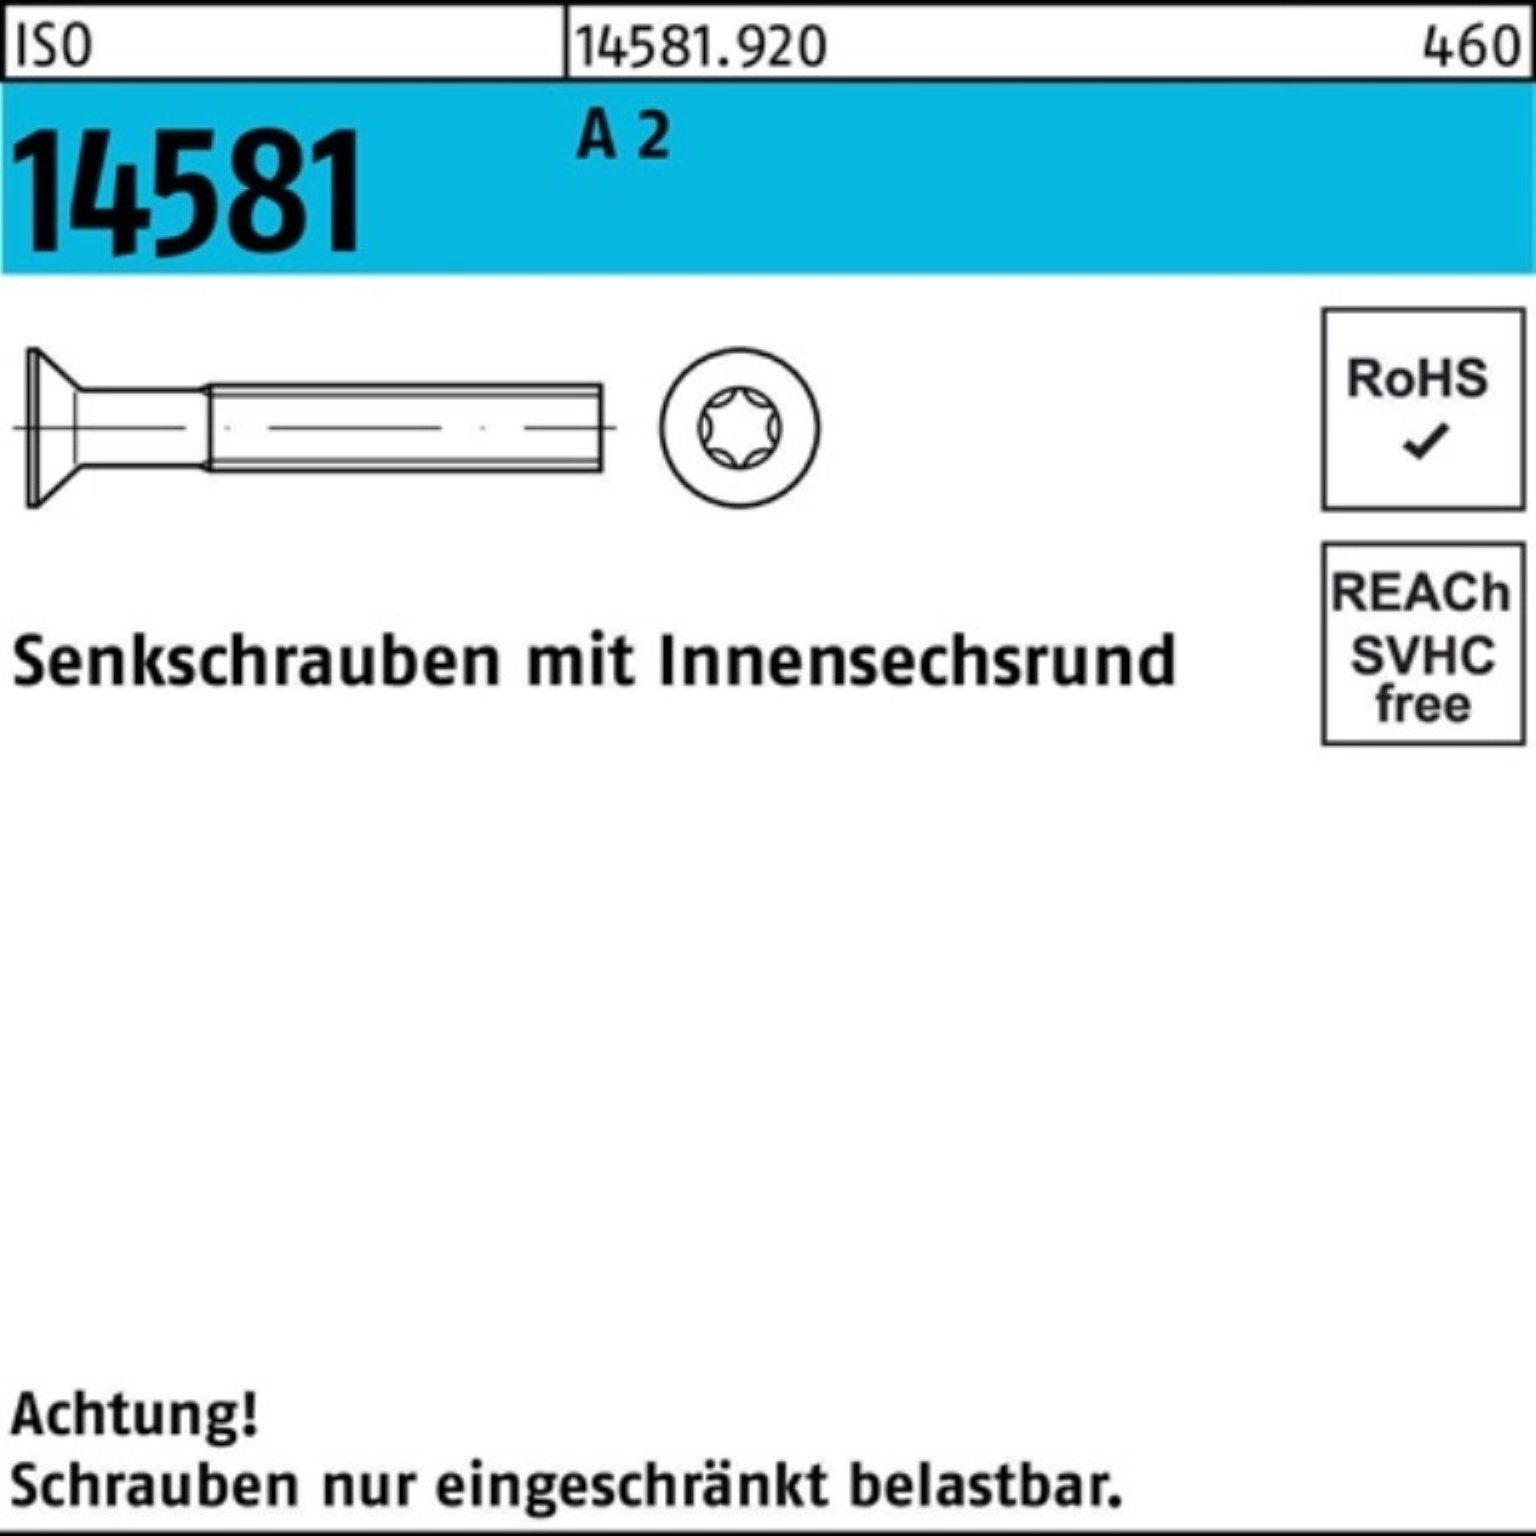 Reyher Senkschraube 1000er Pack A 14581 1000 T20 Senkschraube ISR ISO ISO 2 16 M4x Stück